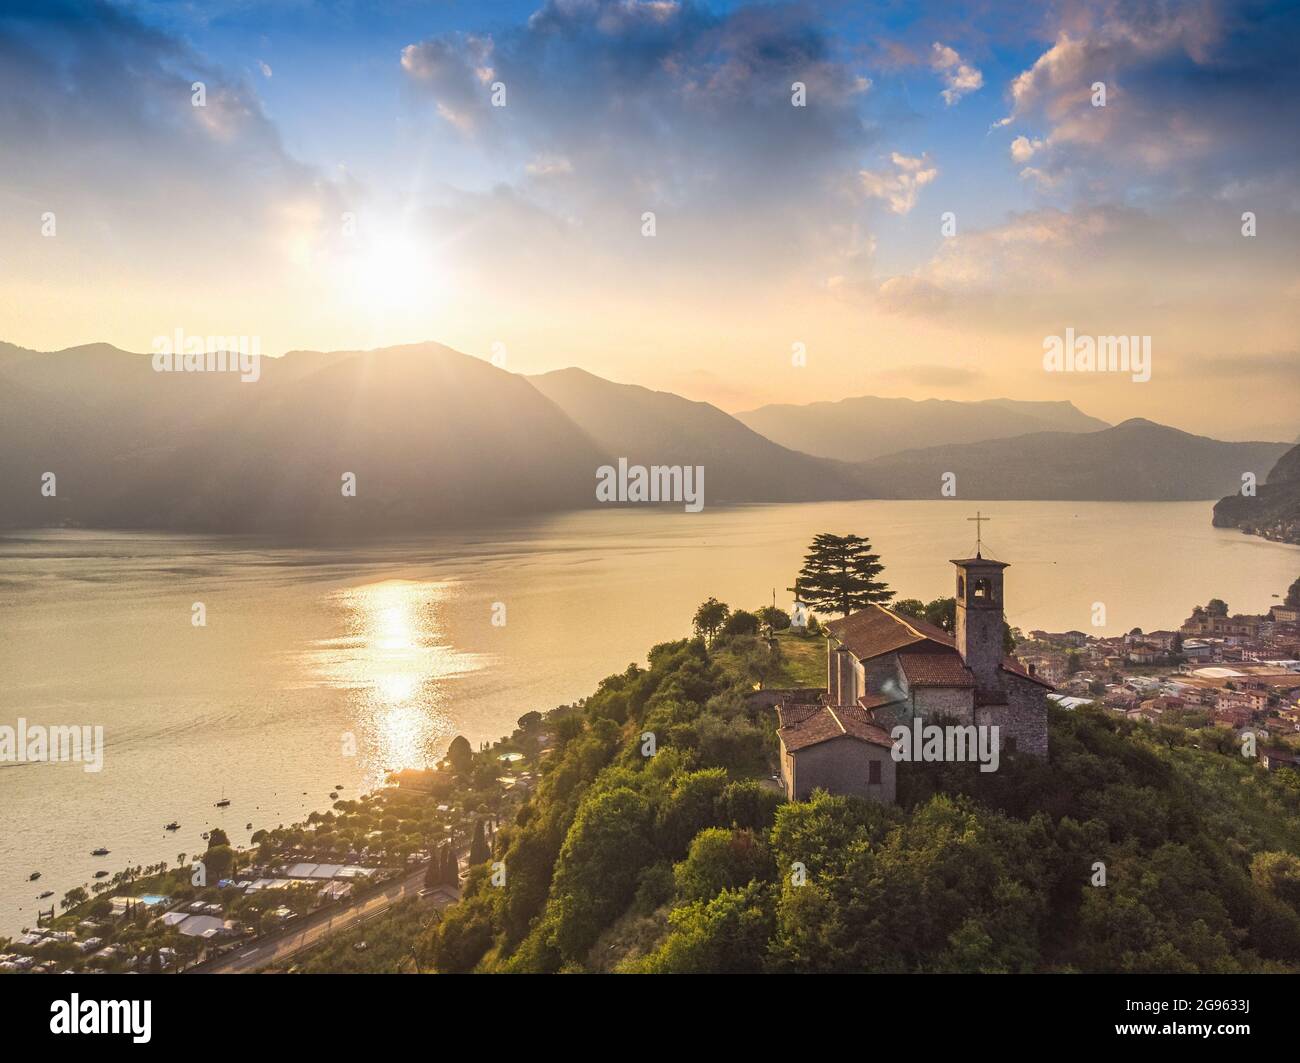 Bellissima vista panoramica aerea dal drone al lago d'Iseo con chiesa in cima alla collina, Lombardia, Italia Foto Stock